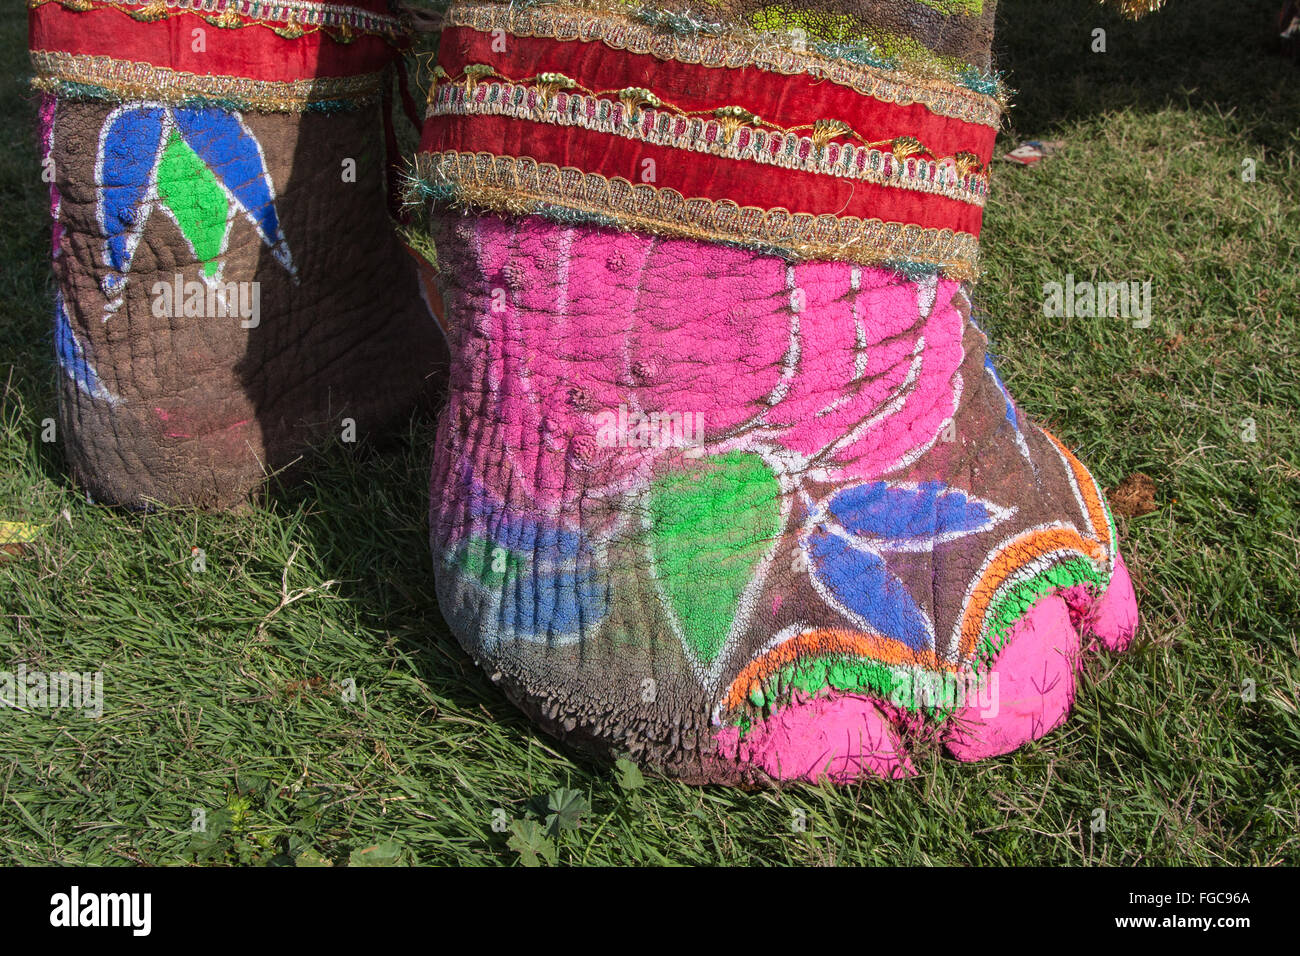 Dettaglio del dipinto di elefante durante il festival di elefante durante holi,celebrazione indù in Jaipur Rajasthan,l'India,l'Asia. Foto Stock